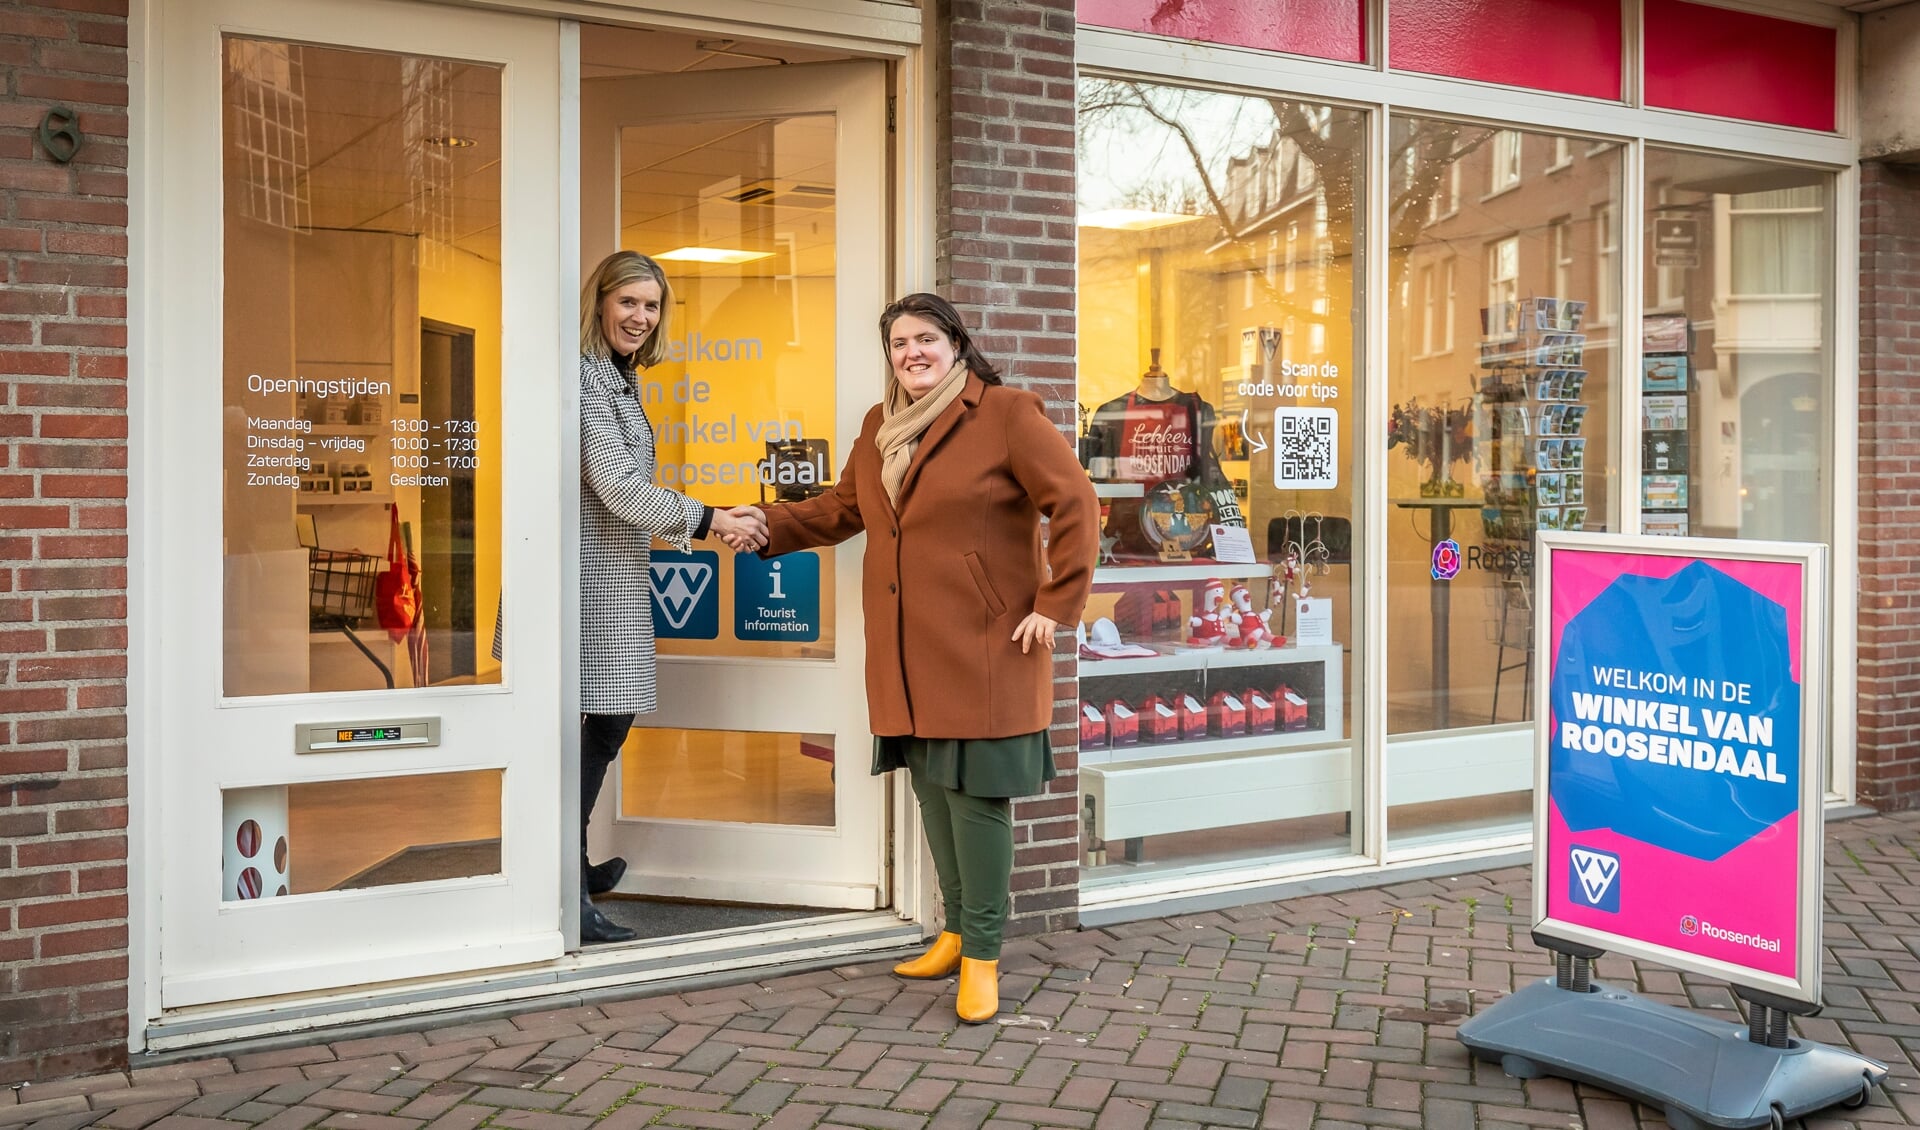 Wethouder Sanneke Vermeulen (rechts) feliciteert Sandra Versteegen met de opening van de nieuwe winkel.